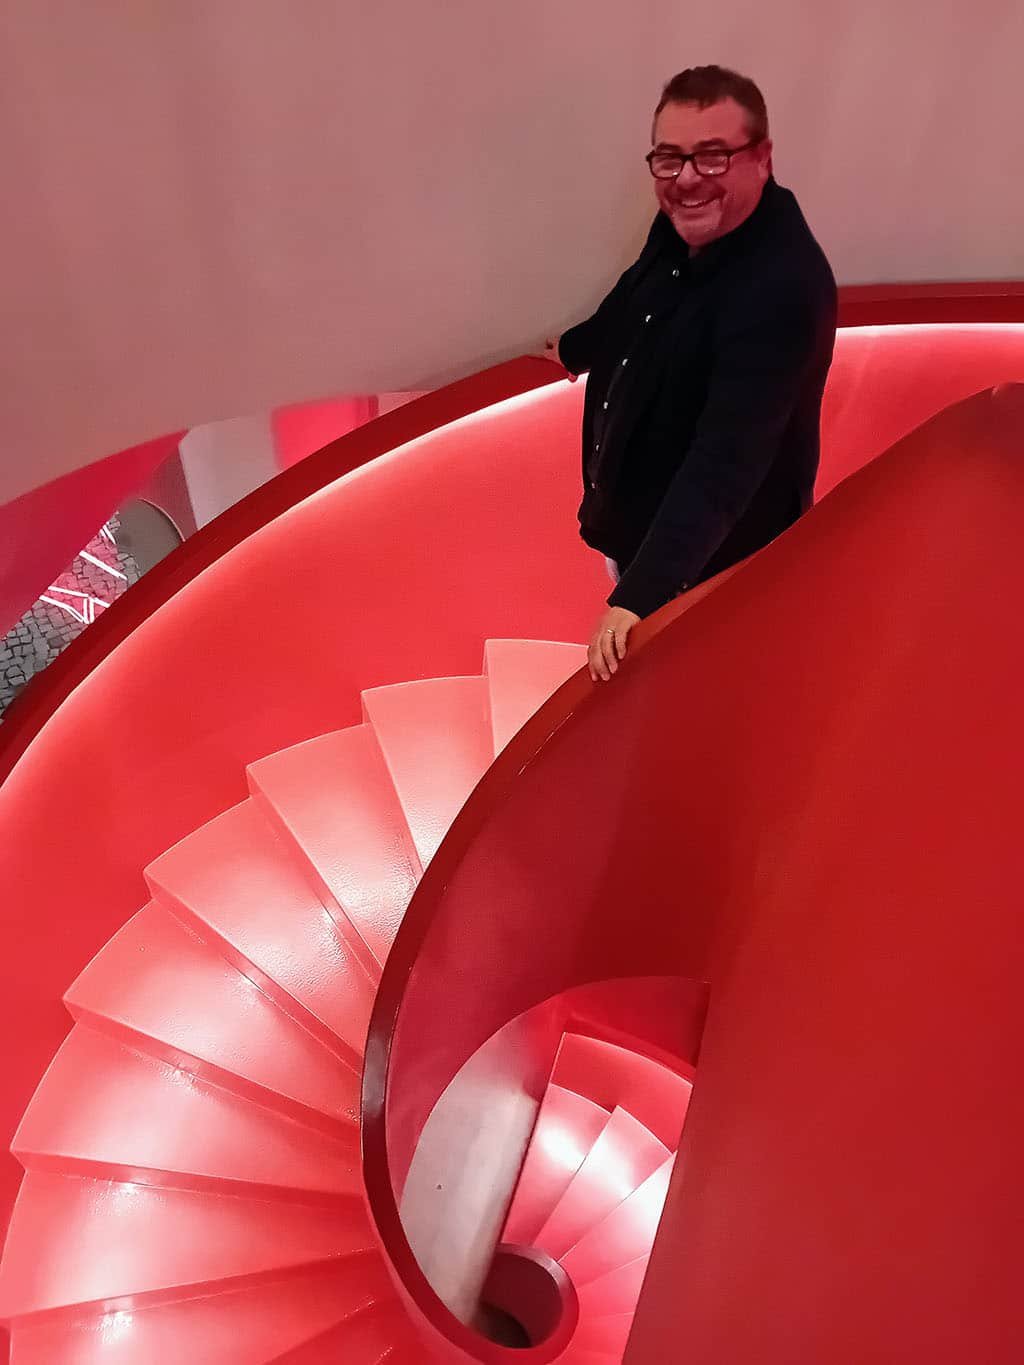 Bobby O'Reilly sur l'escalier rouge Bixos